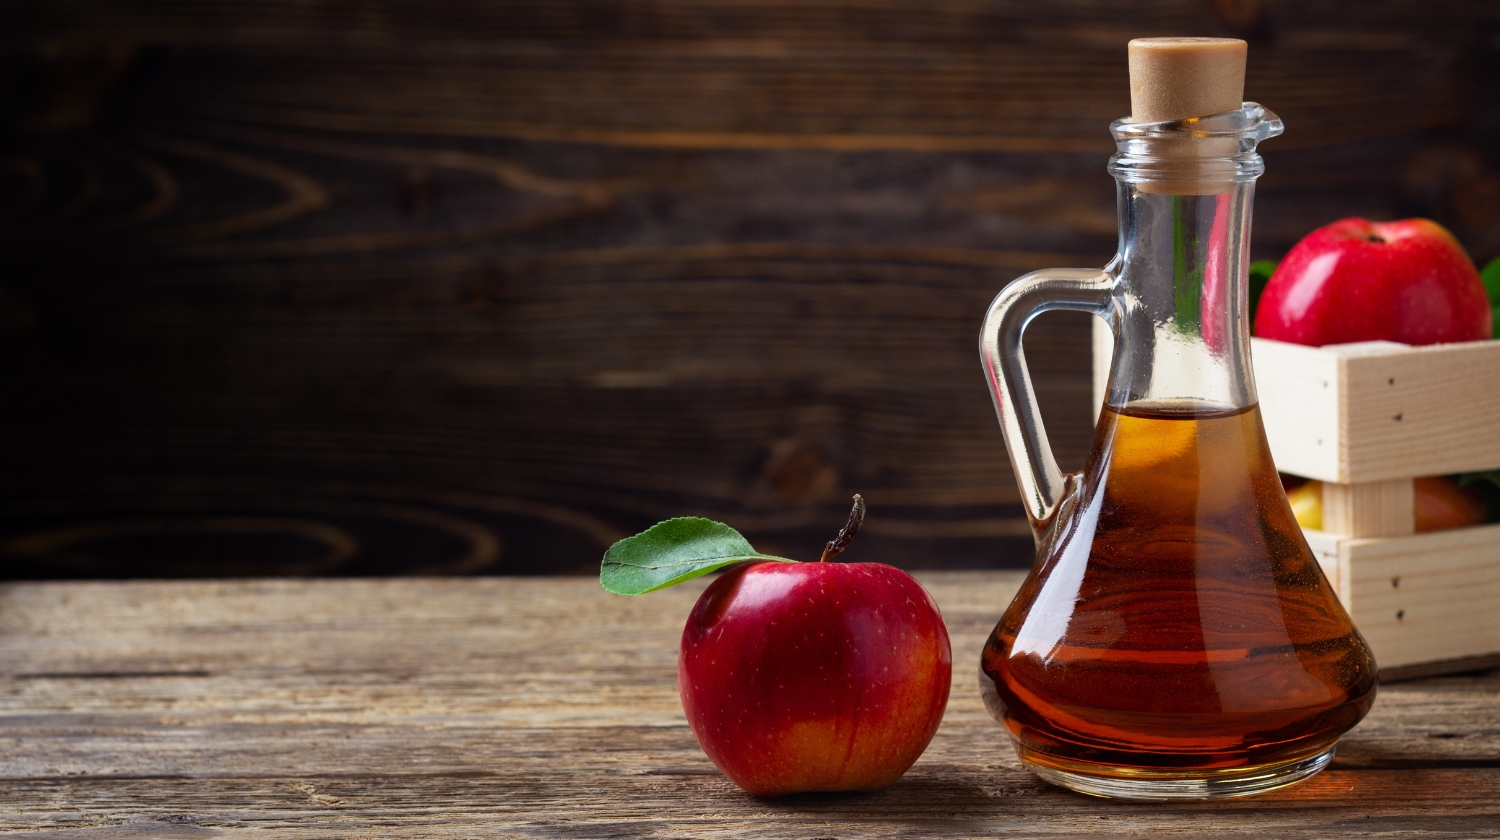 Apple Cider Vinegar Douche For BV
